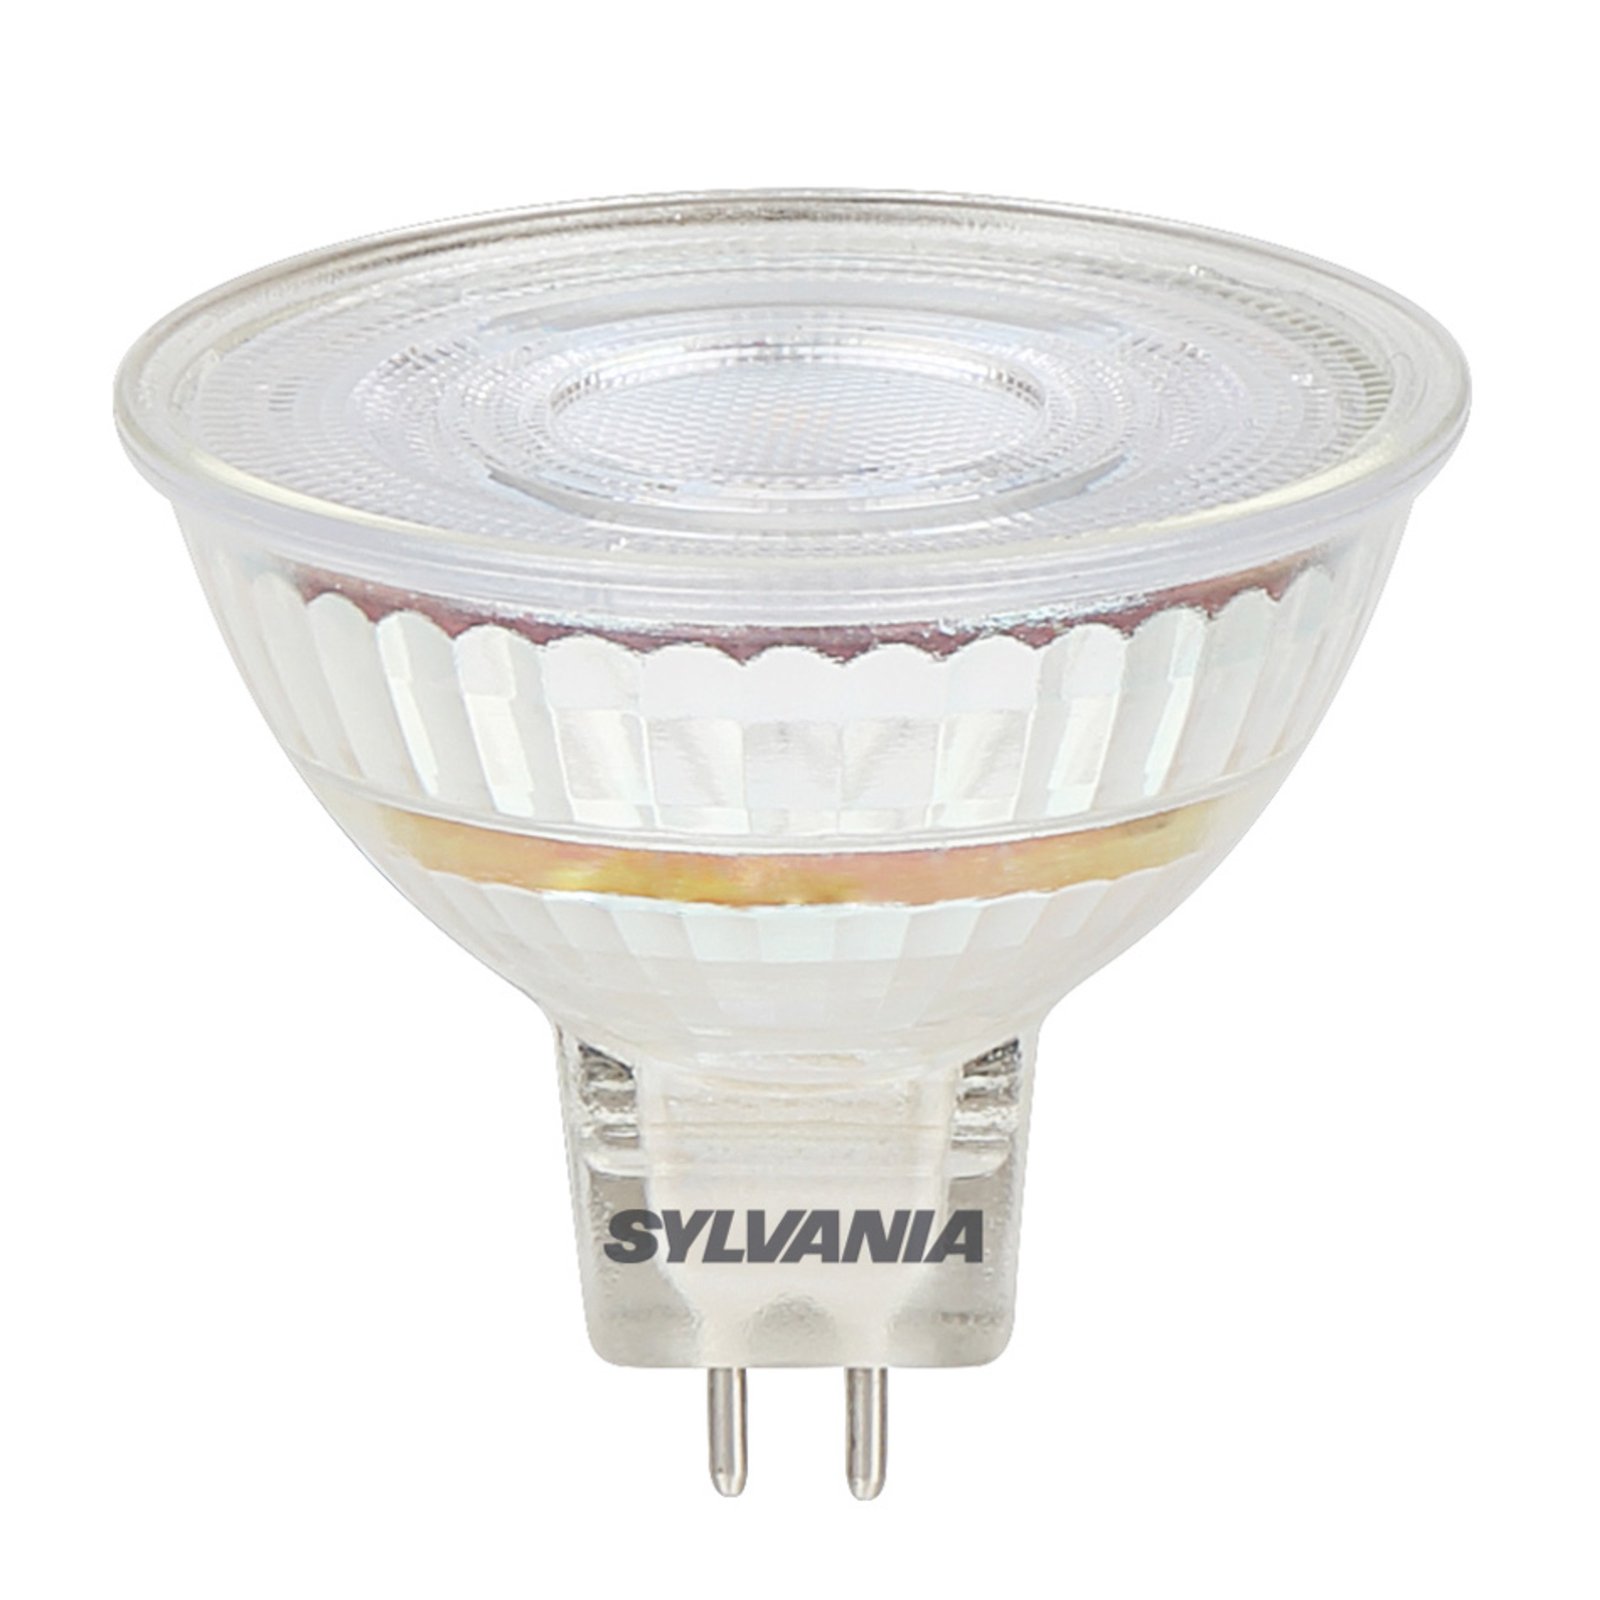 Reflector LED bulb GU5.3 Superia MR16 4,4 W 3000 K